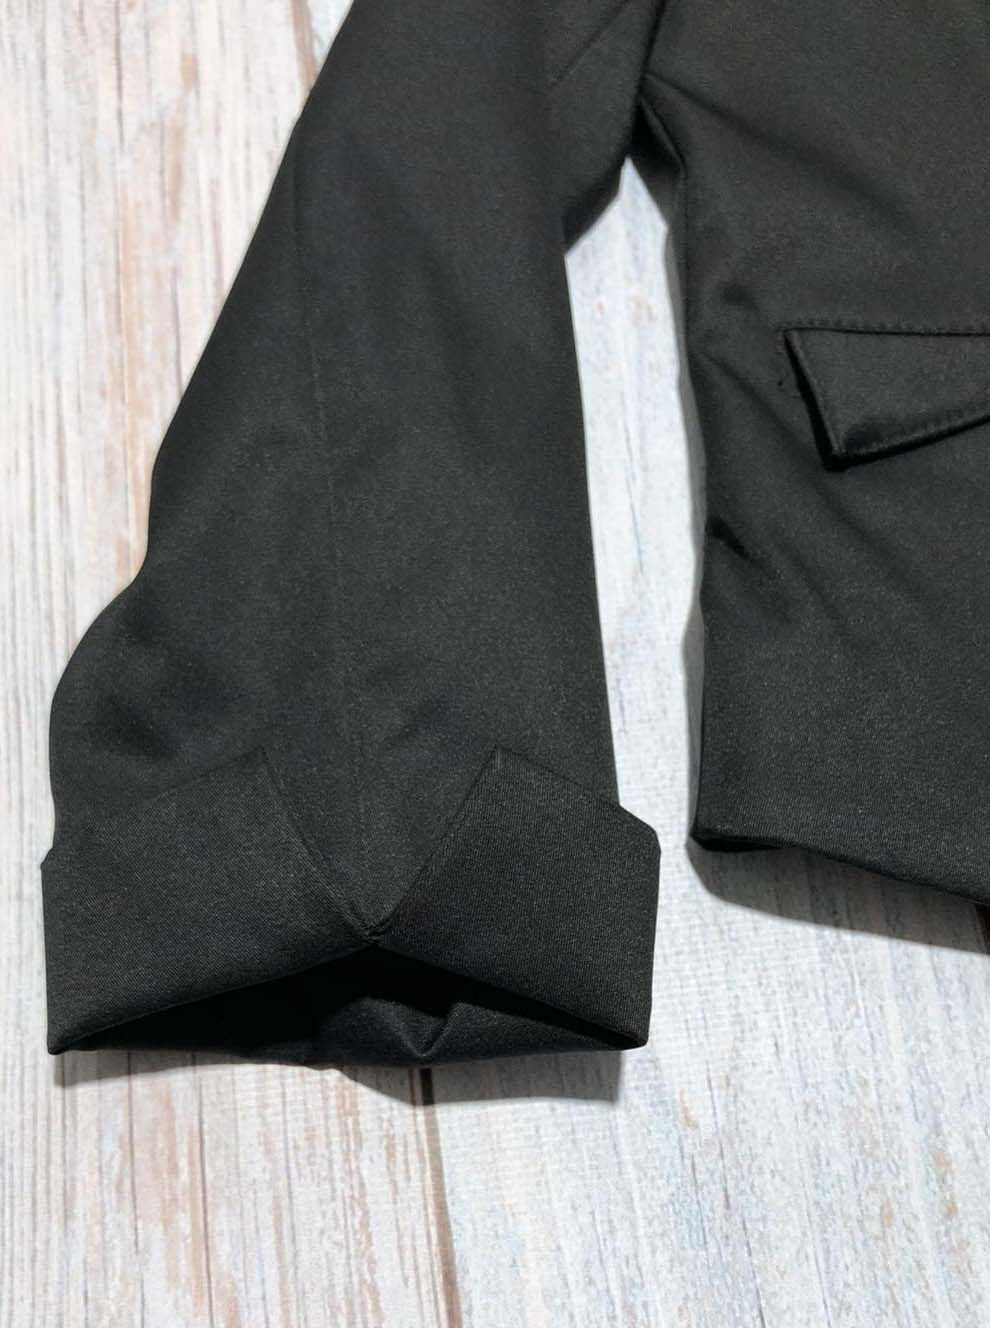 Пиджак школьный для девочки SUZIE Габби мемори-коттон чёрный ЖК-14605  - купить